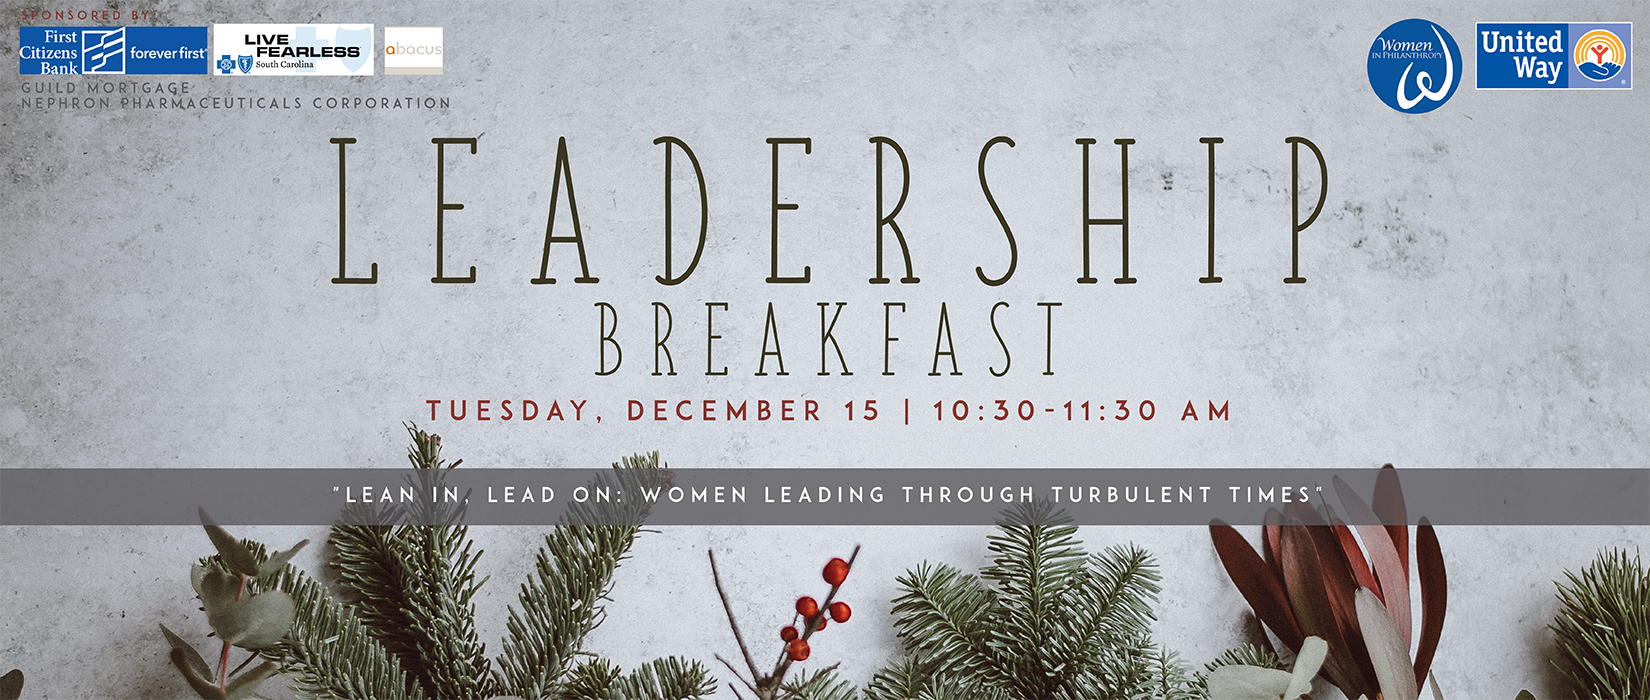 Register for Women in Philanthropy Leadership Breakfast on Tuesday, December 15